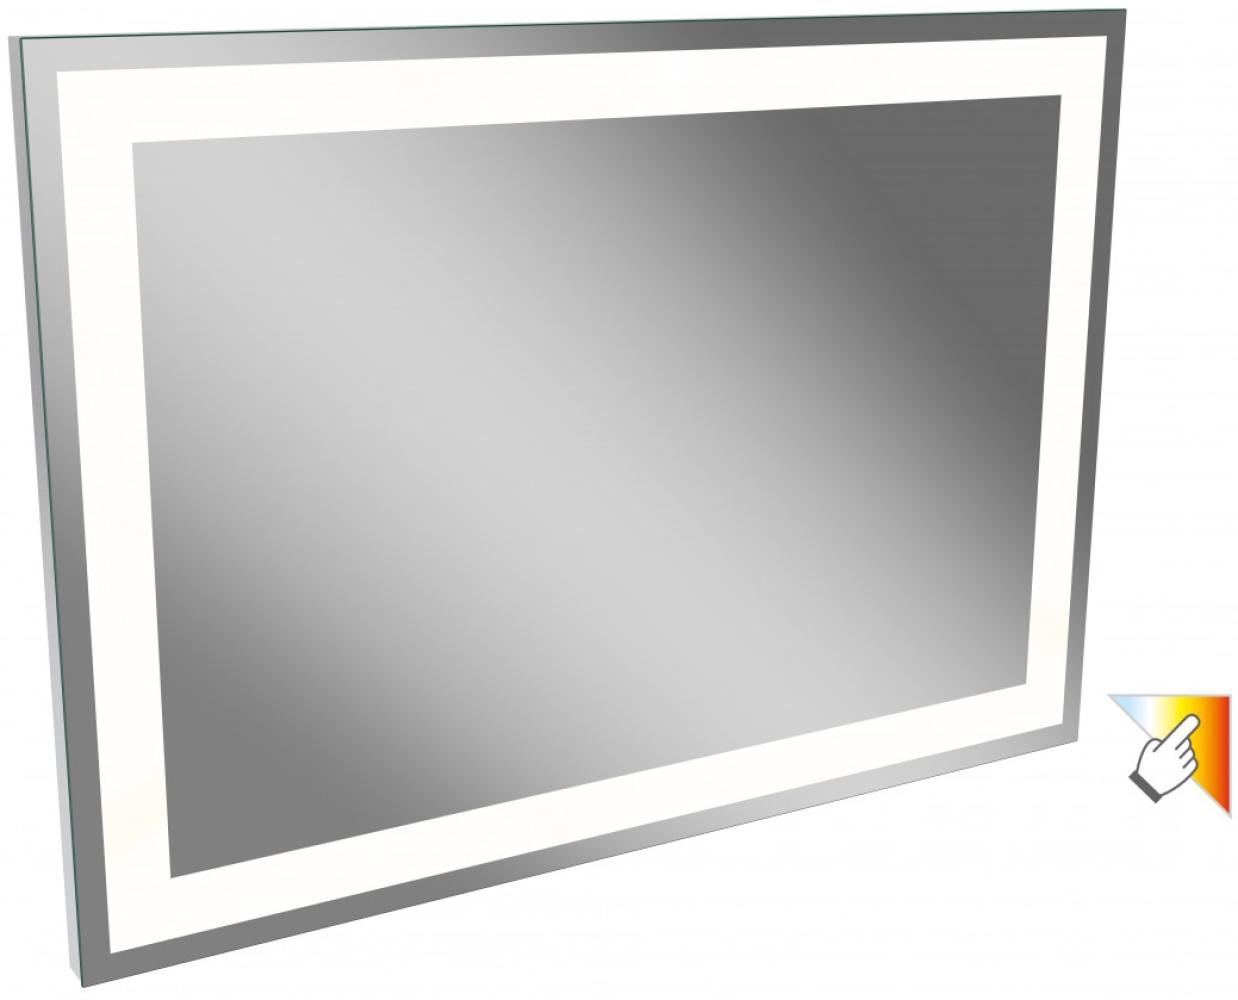 Lanzet P5 Spiegelelement 100 cm mit 3 Helligkeitsstufen Bild 1